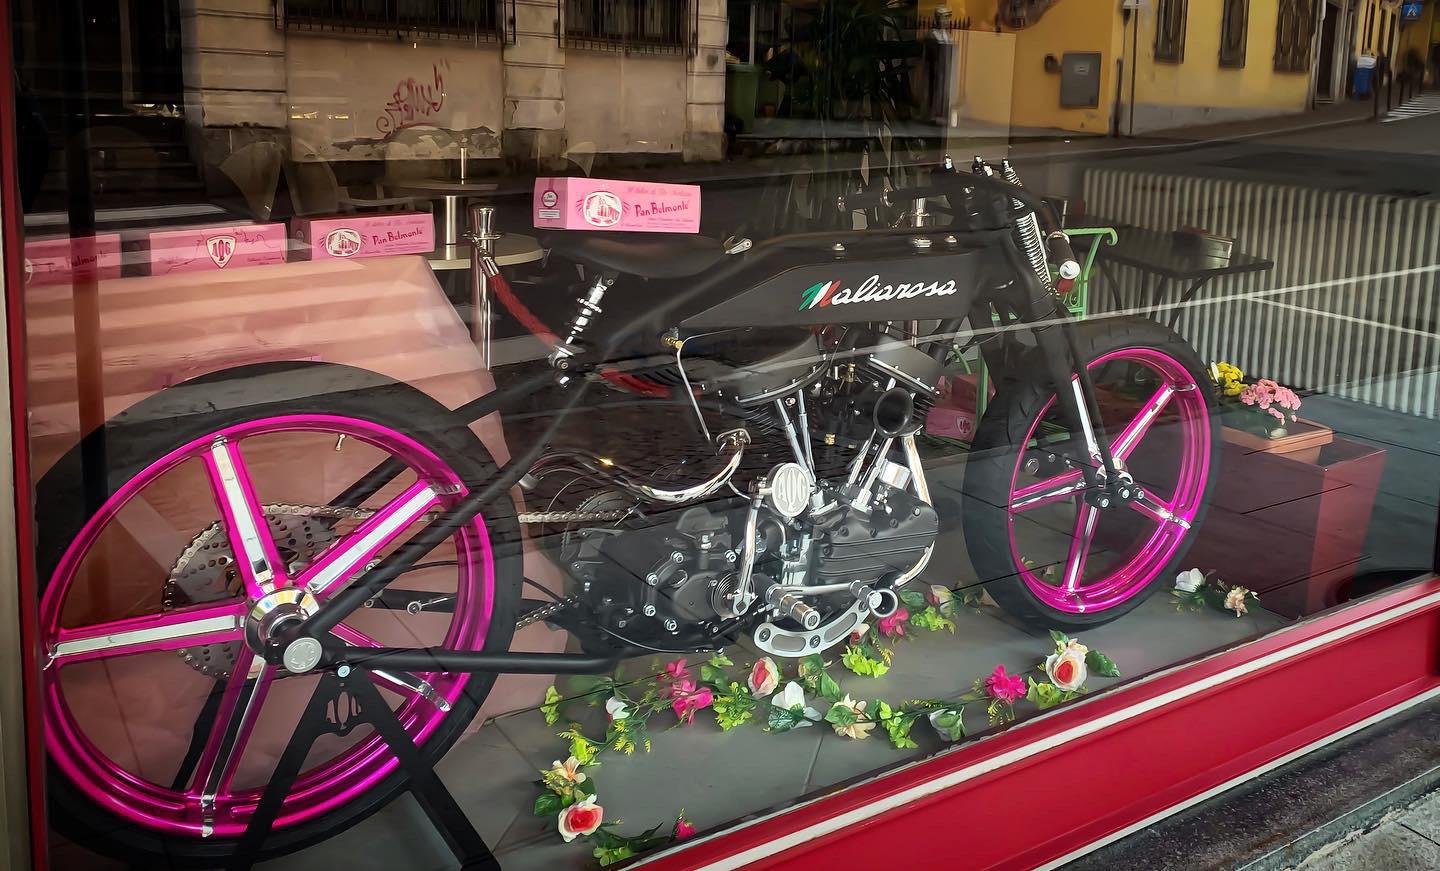 Apettando il Giro, Maliarosa si mette in vetrina: la mitica moto esposta a Castellamonte